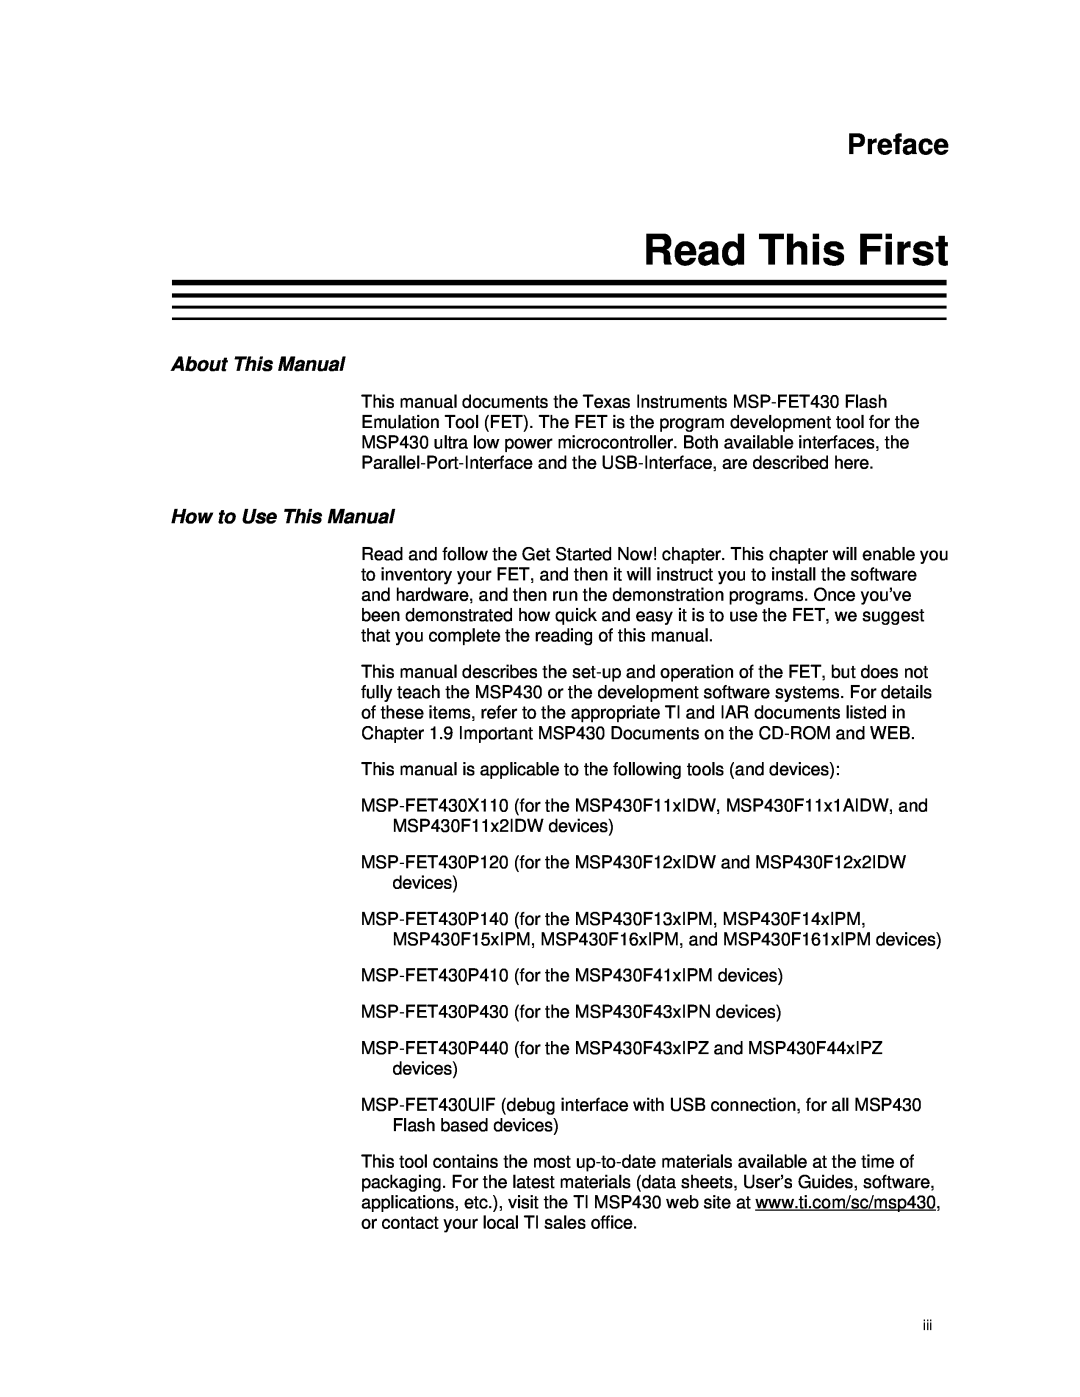 Texas Instruments MSP-FET430 manual Read This First, About This Manual, How to Use This Manual, Preface 